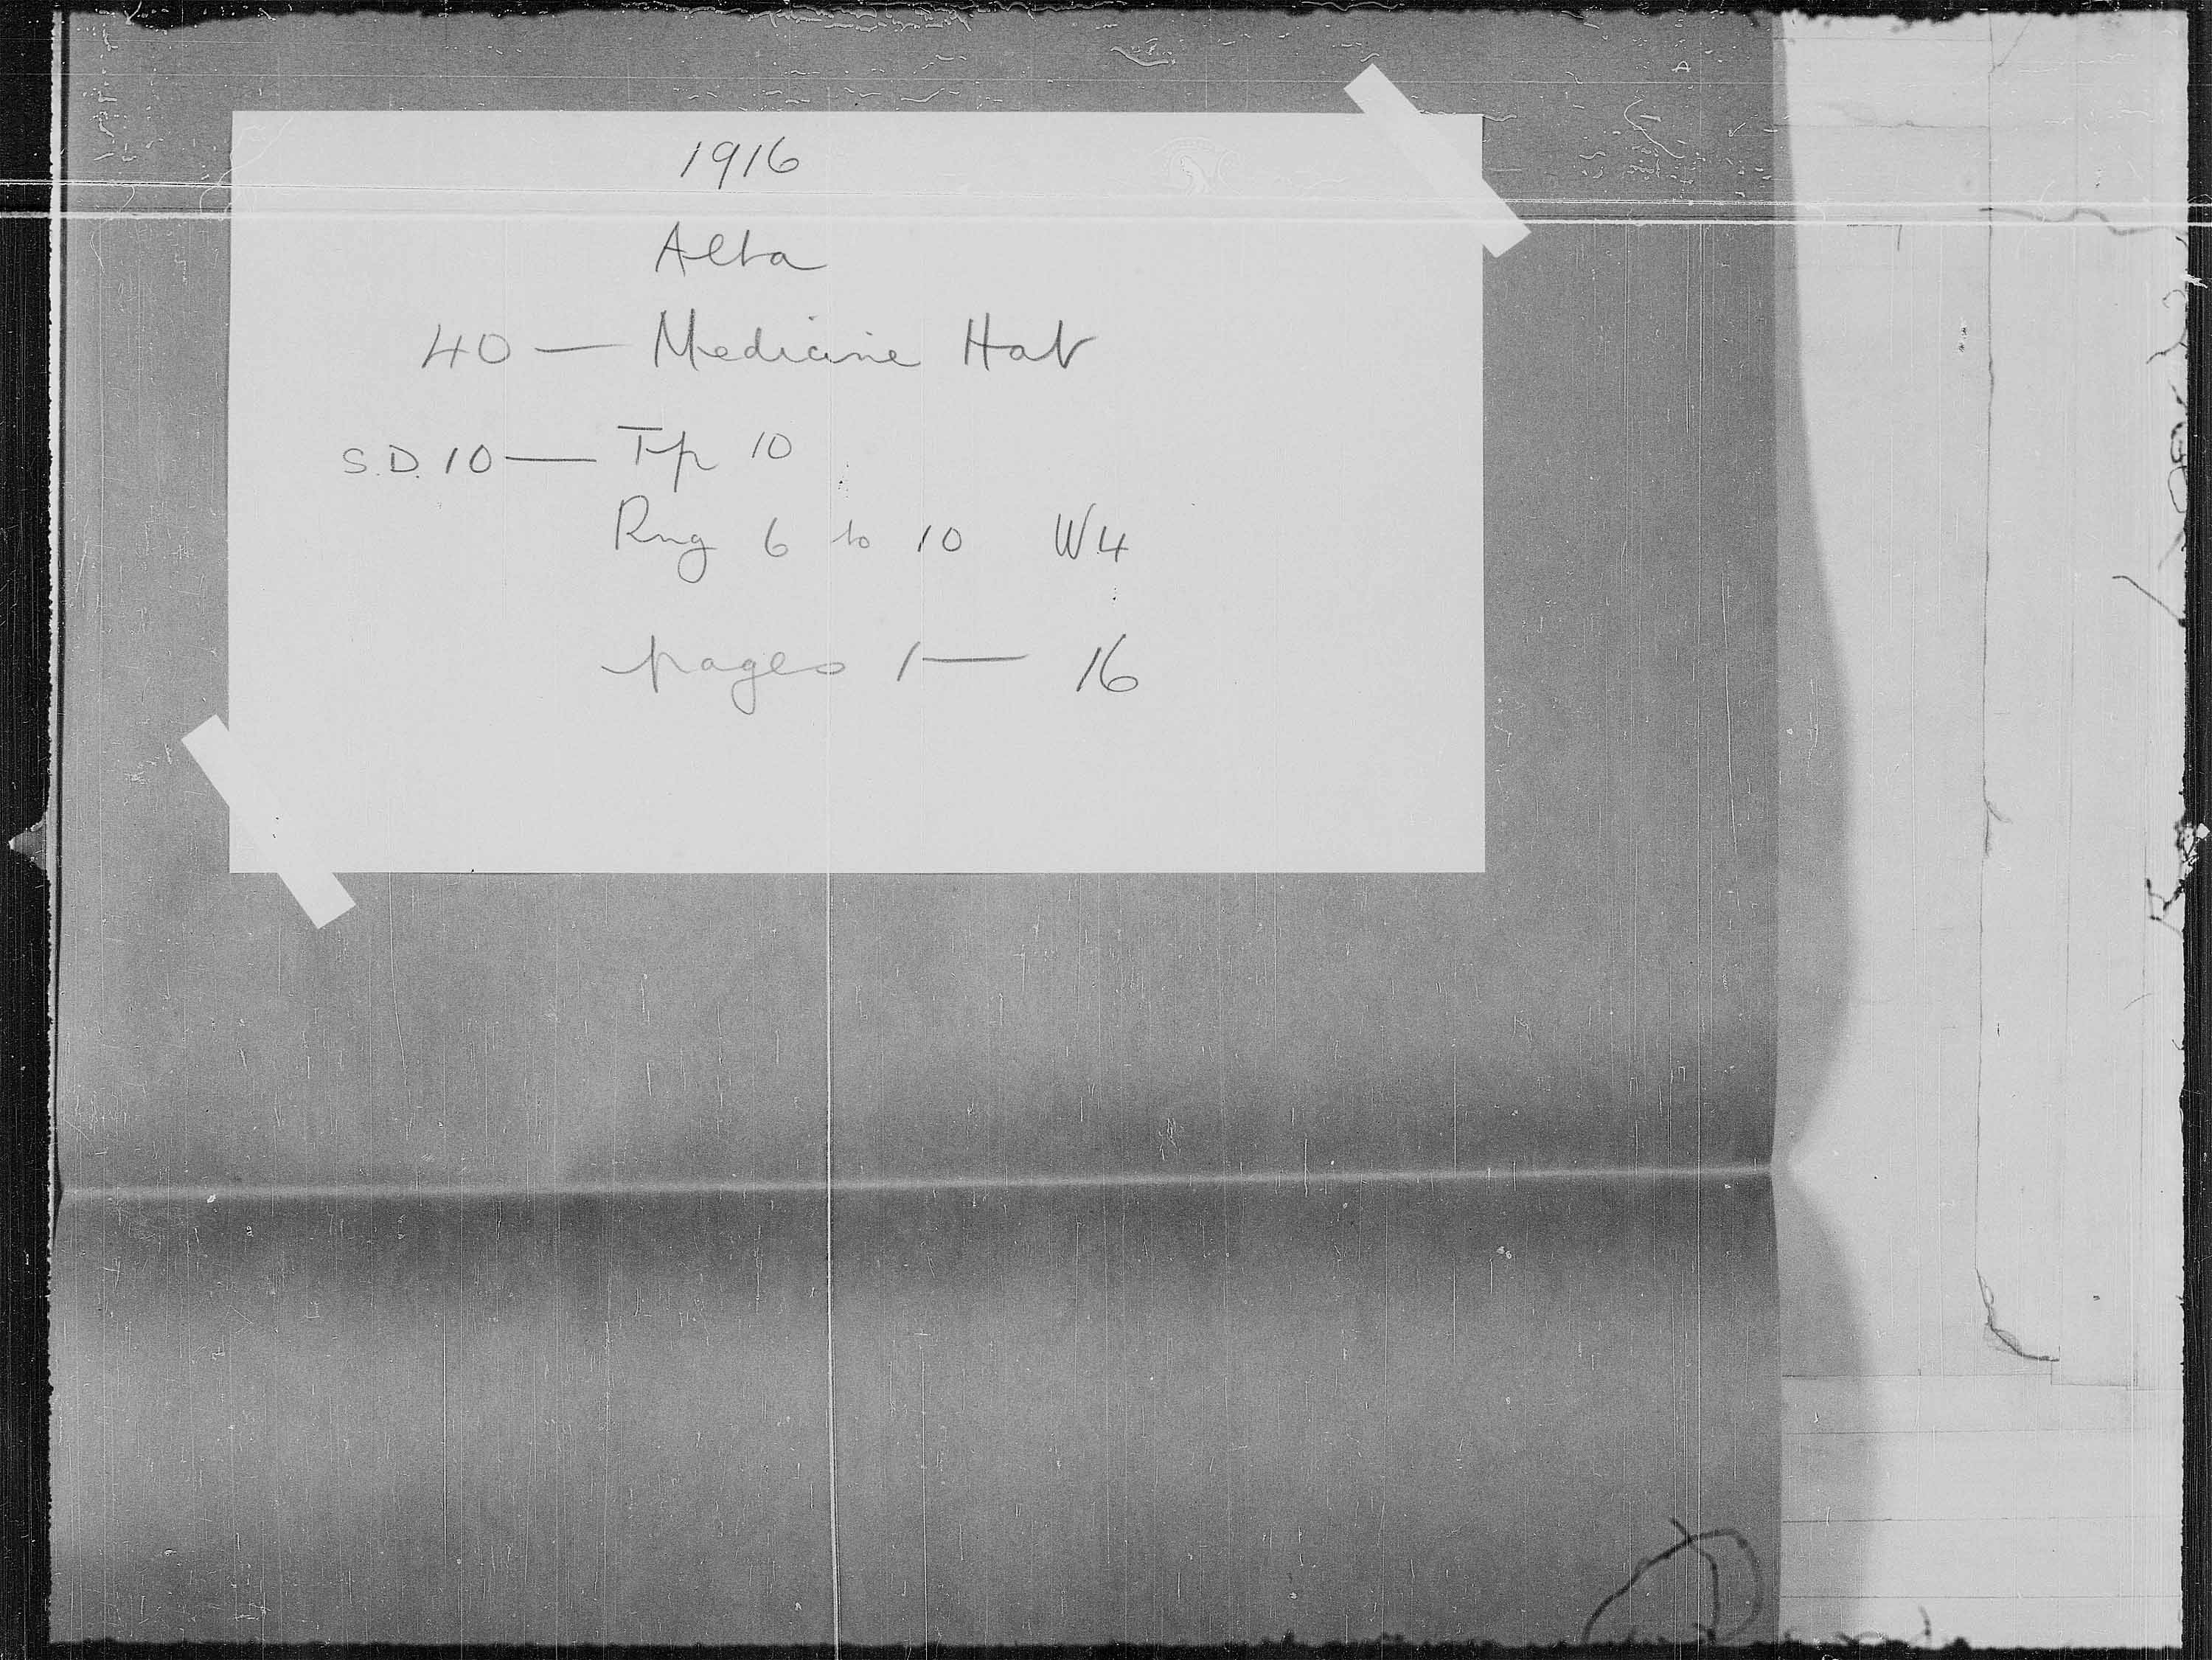 Titre : Recensement des provinces des prairies (1916) - N d'enregistrement Mikan : 3800575 - Microforme : t-21953